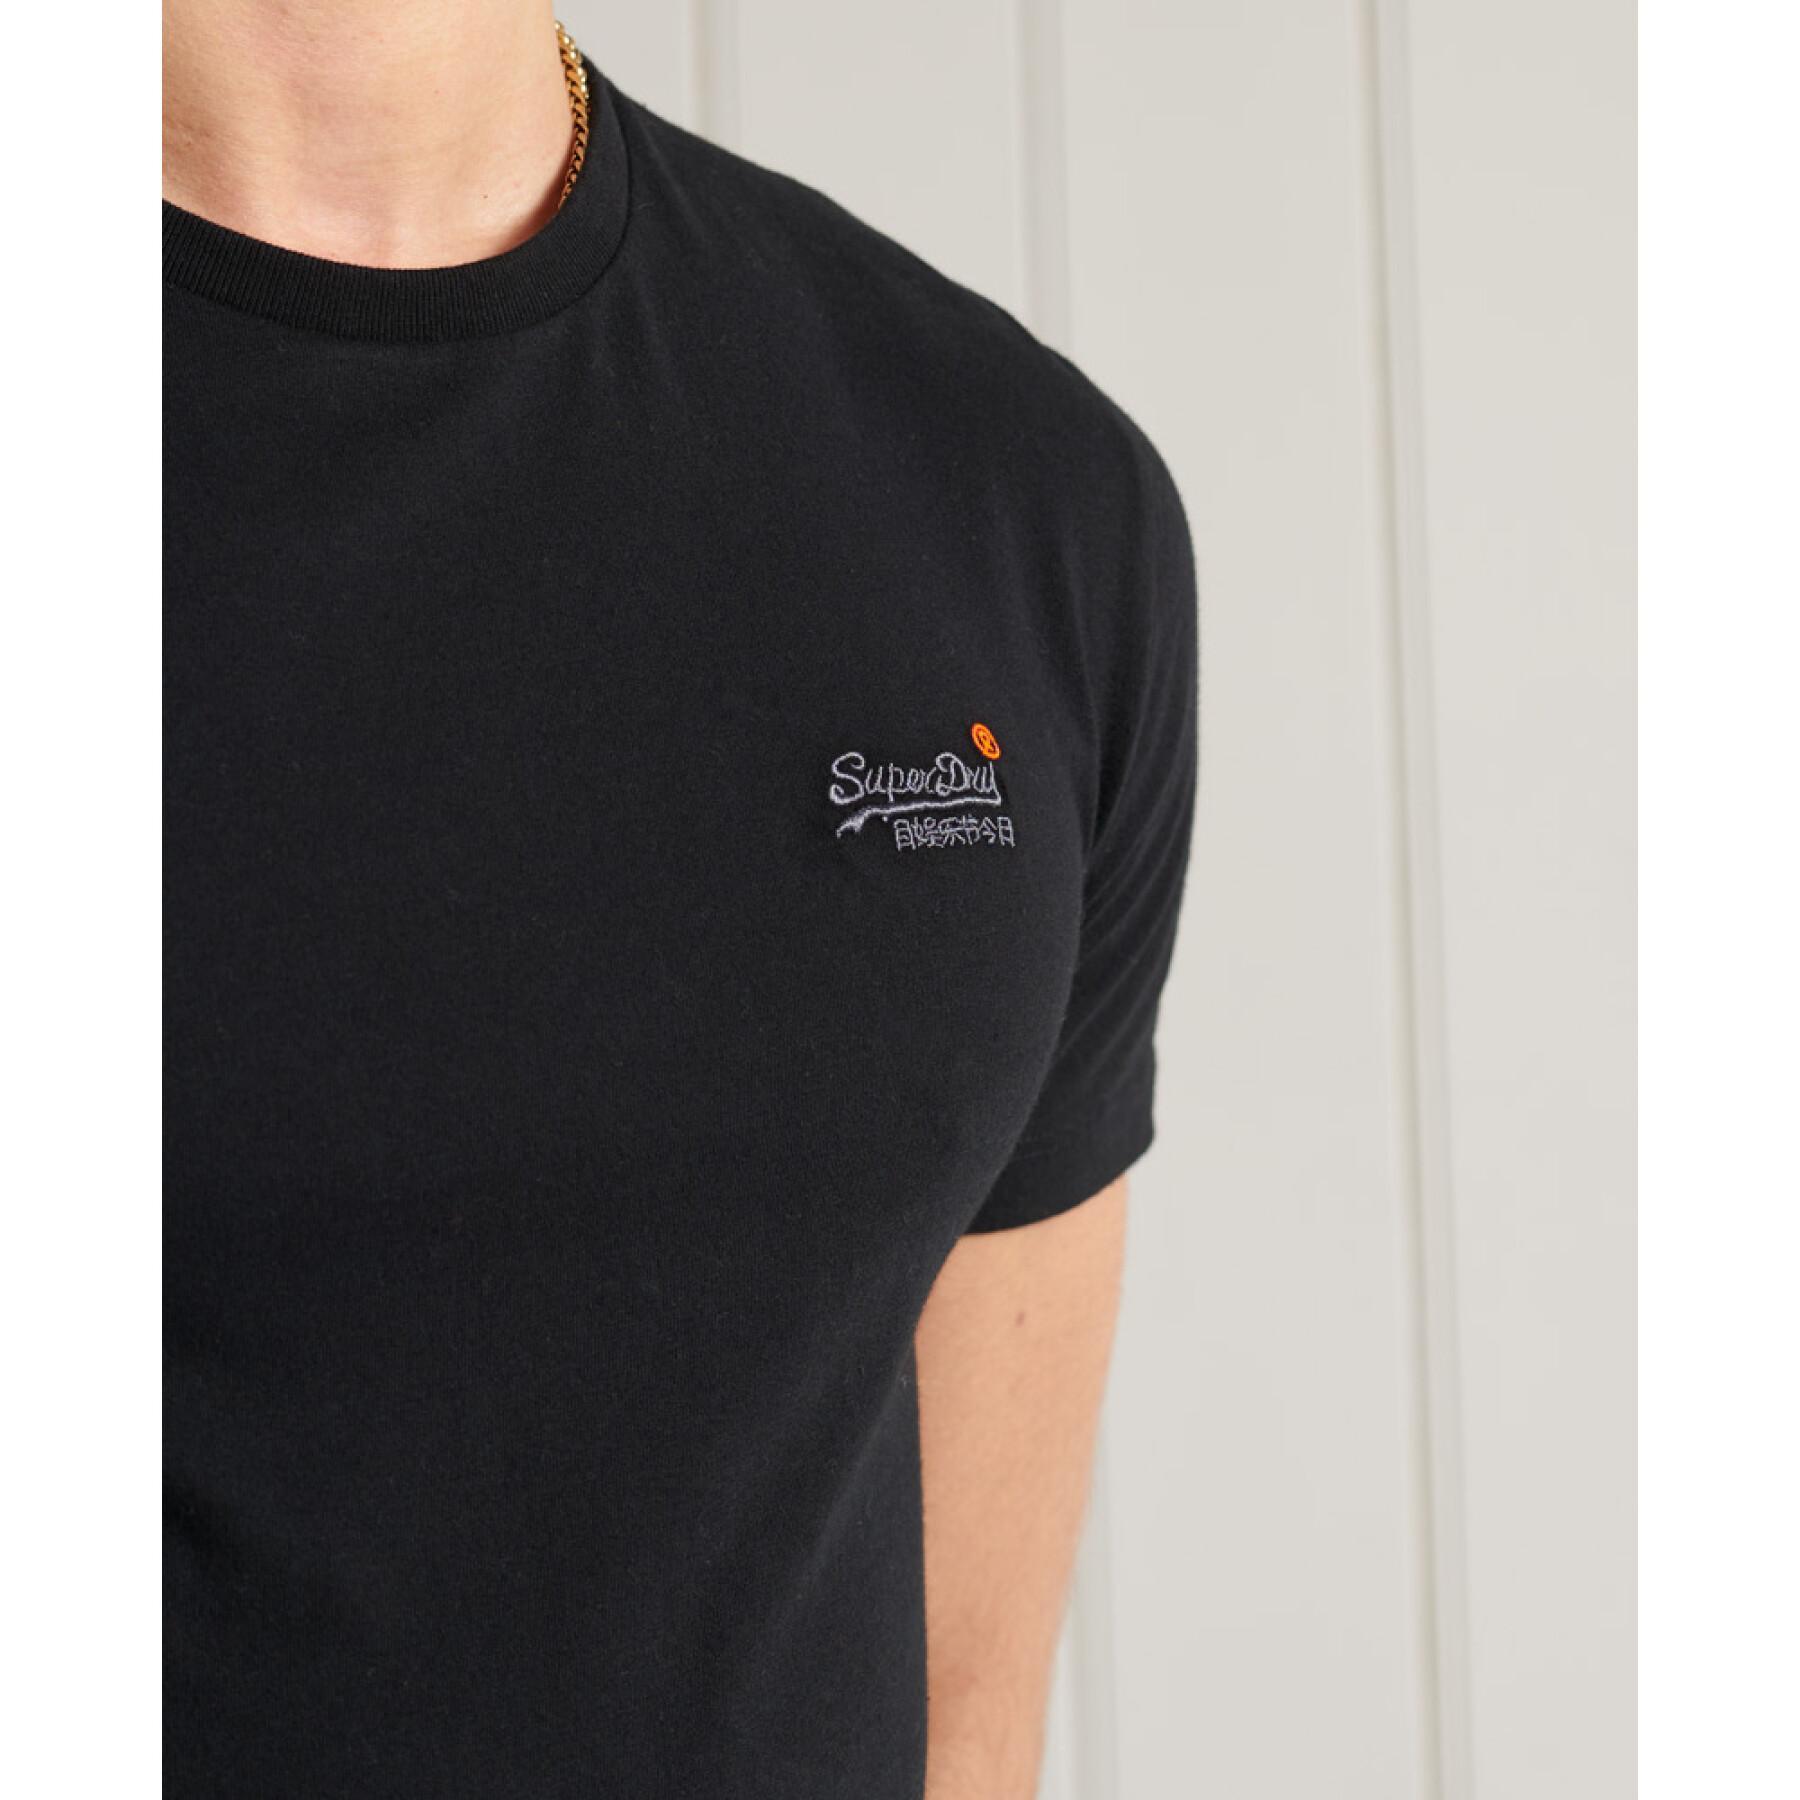 Besticktes T-shirt Superdry Vintage Orange Label